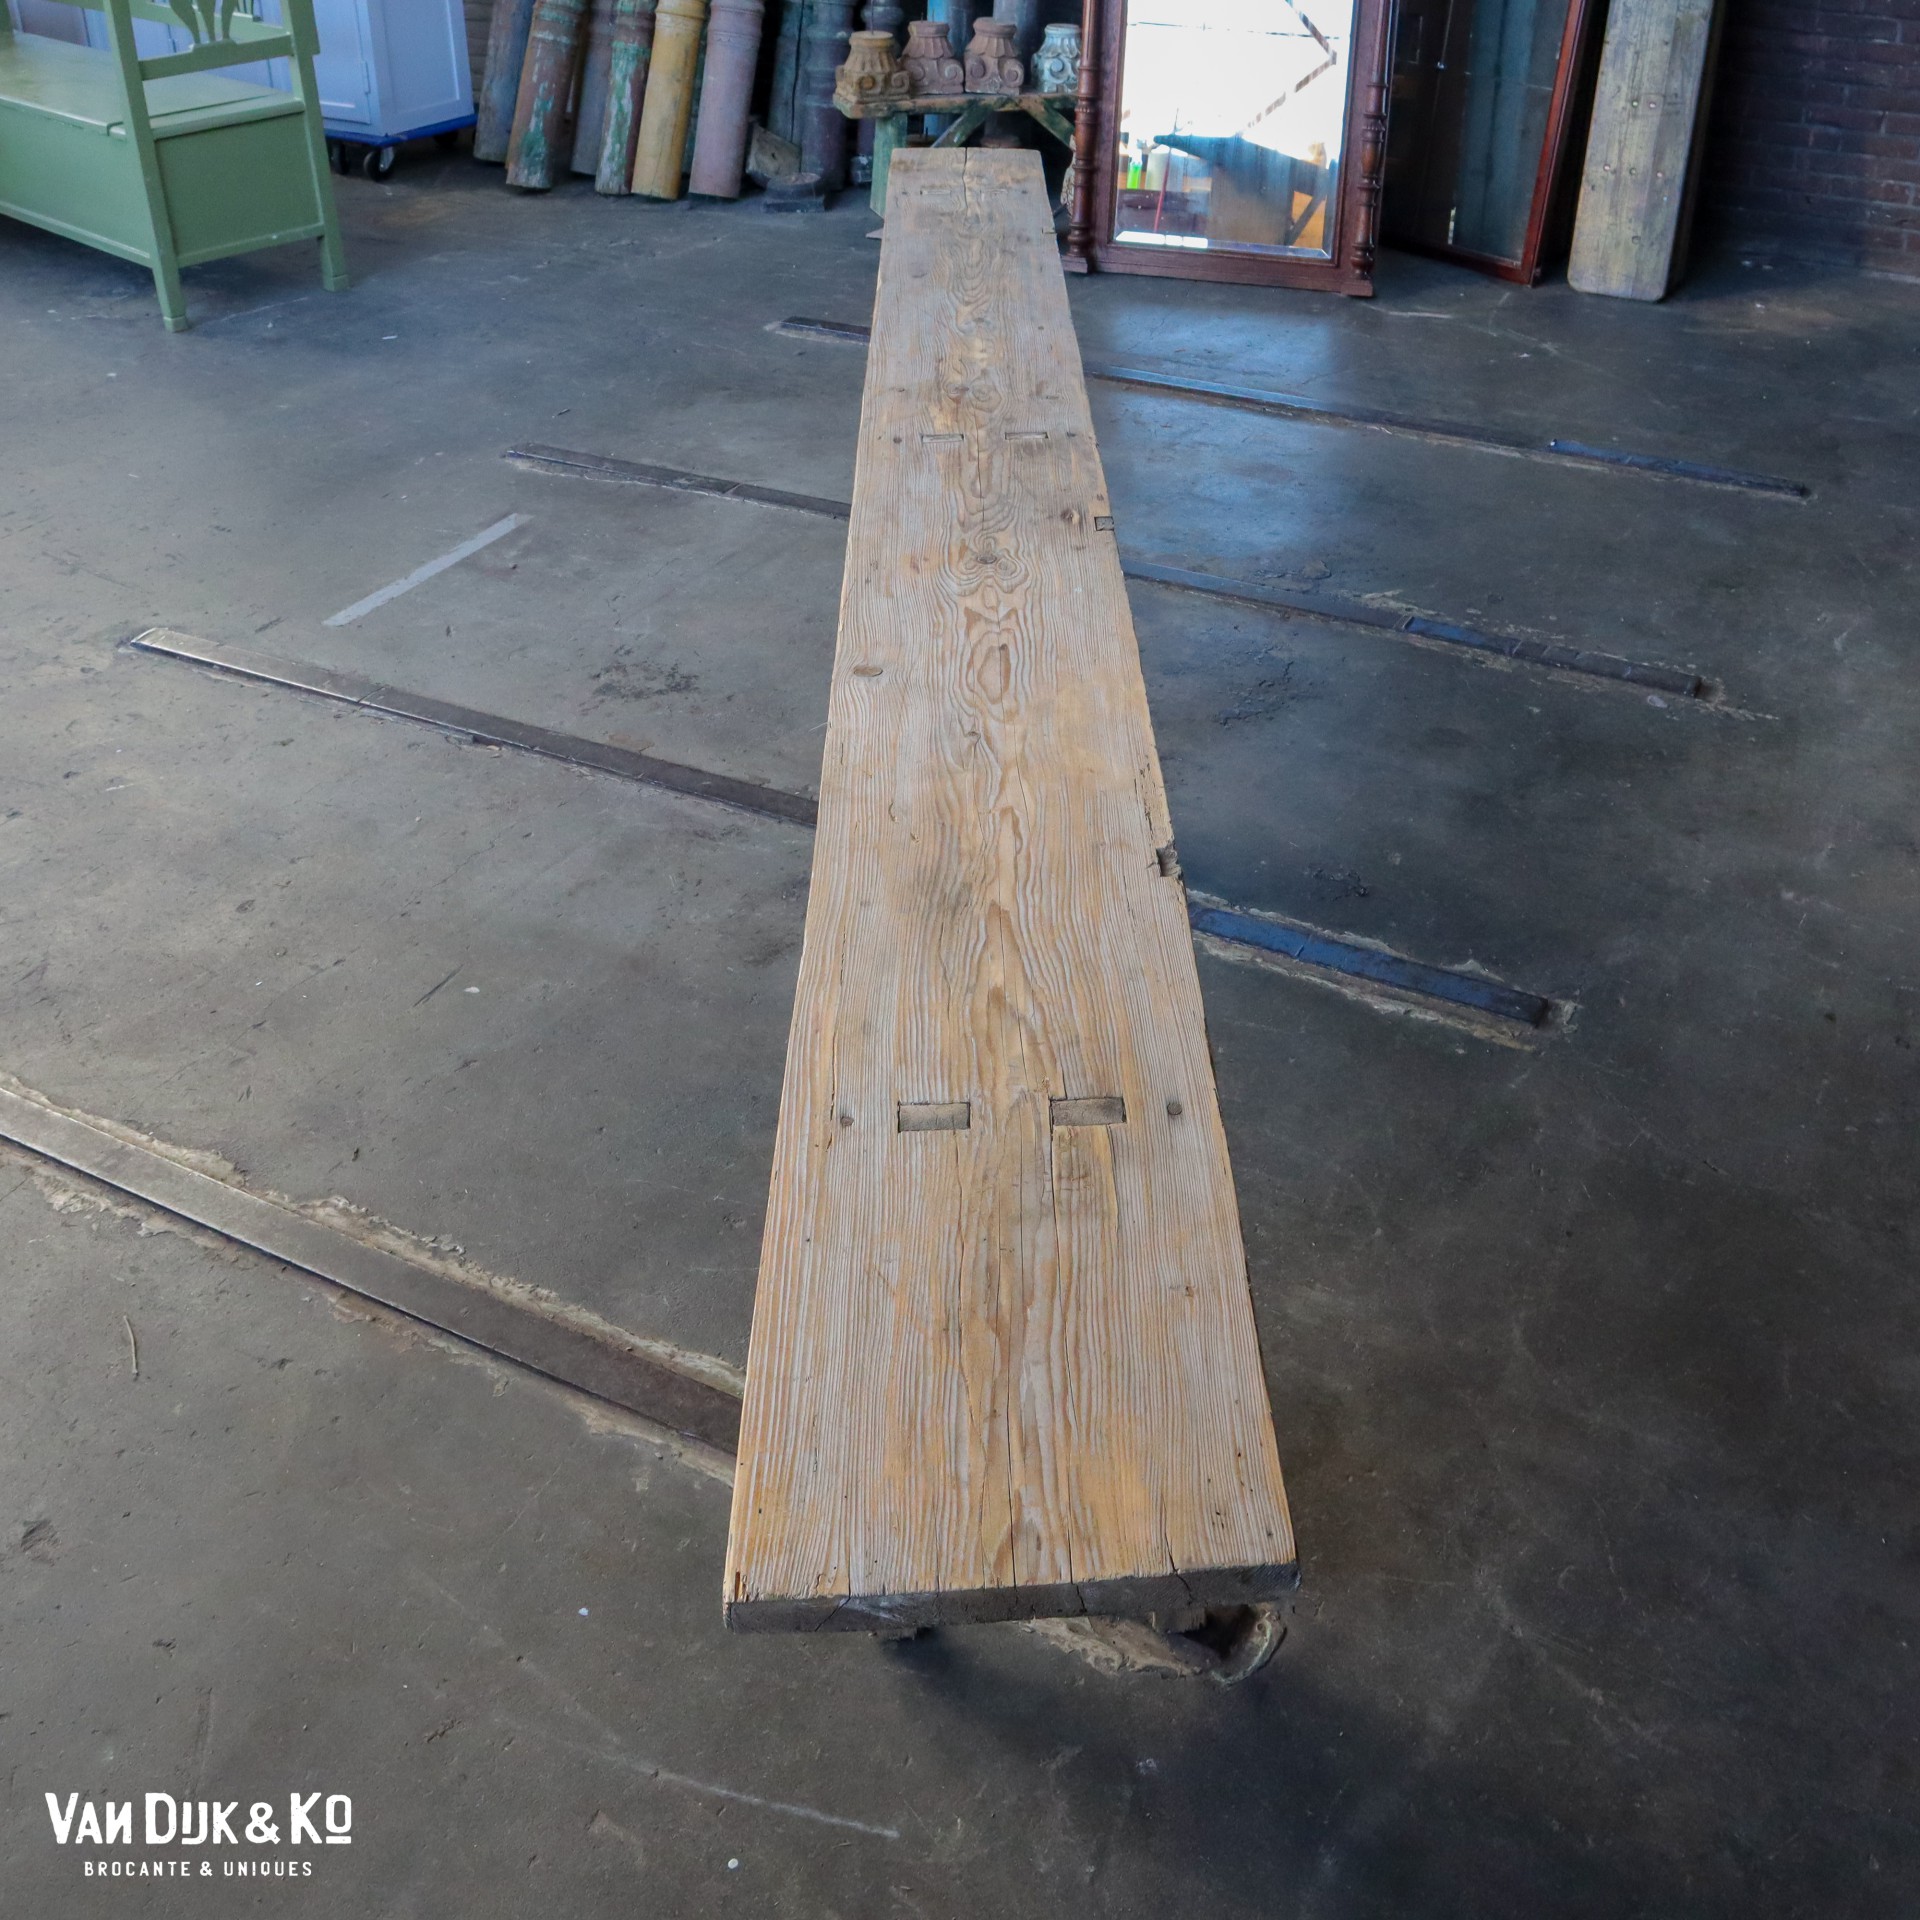 activering extract elegant Lange houten bank » Van Dijk & Ko